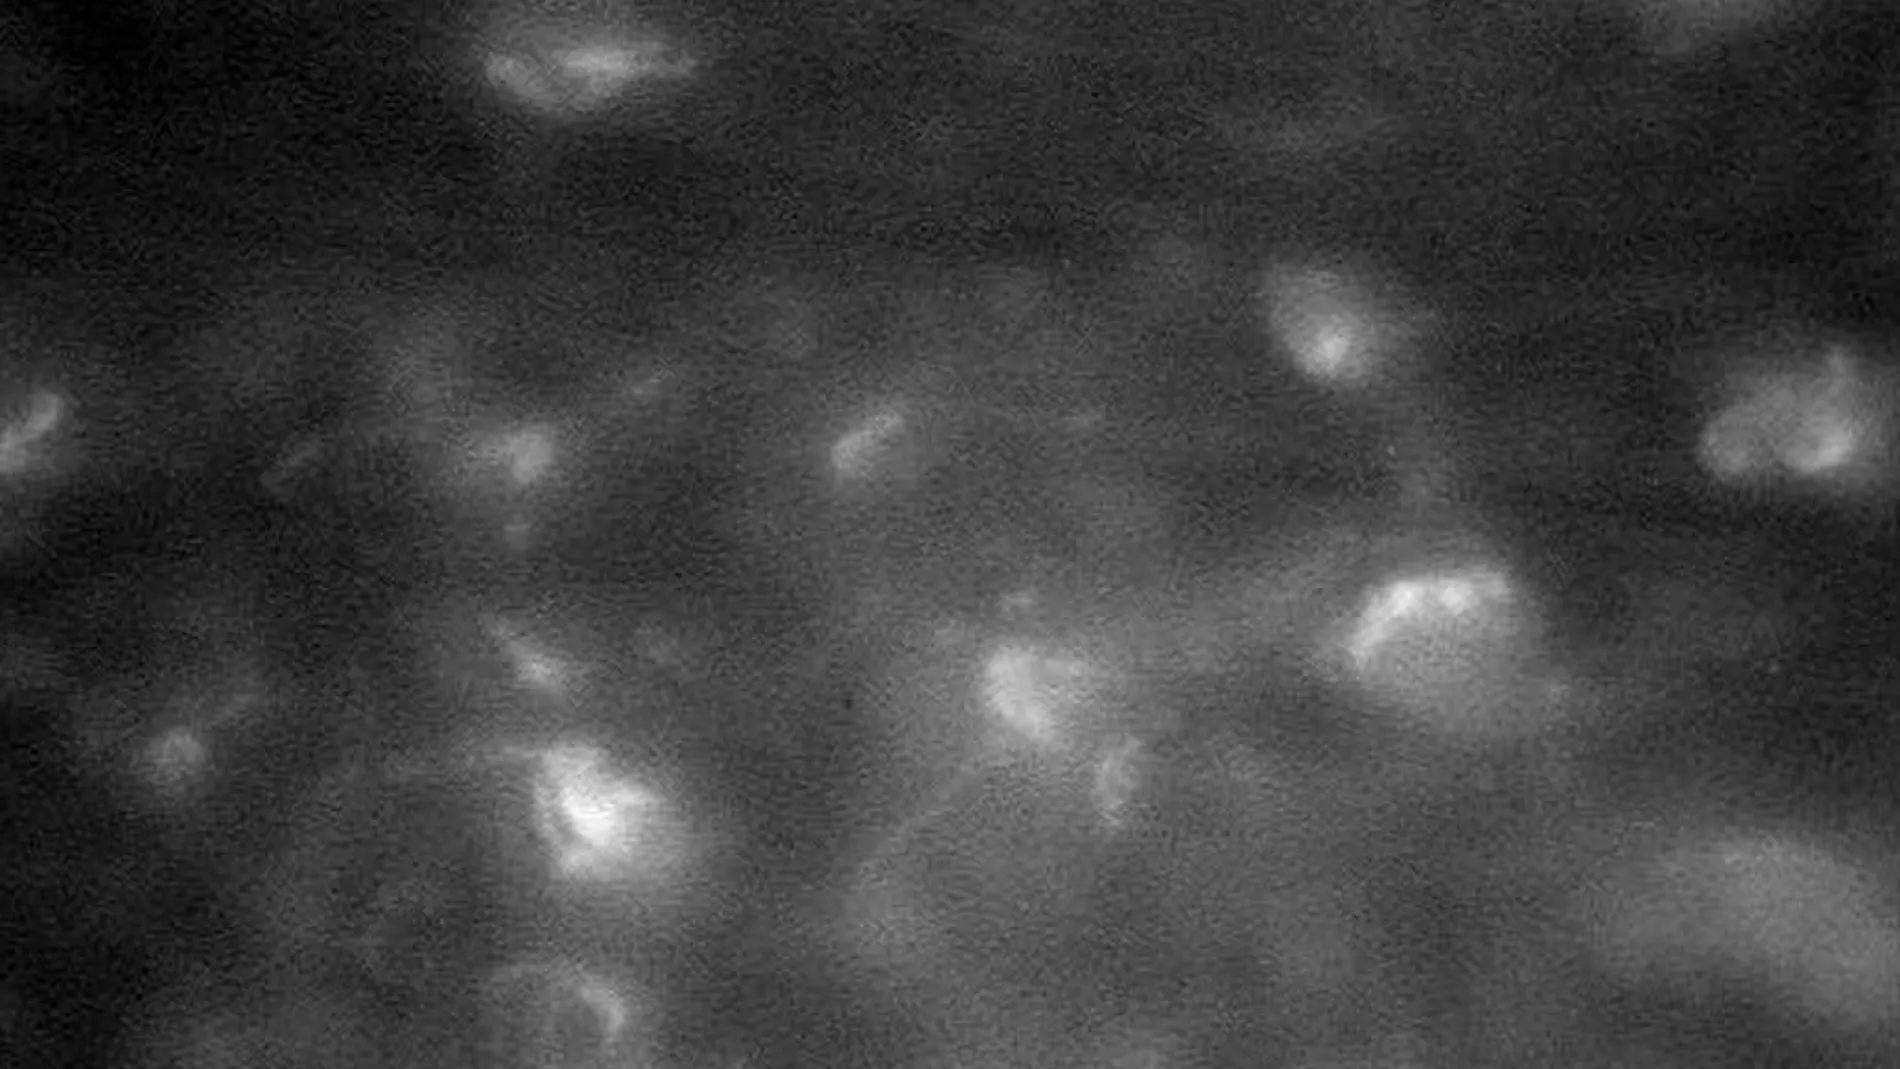 Imagen sin procesar tomada por la nave Cassini que muestra la atmósfera de Saturno más cerca que nunca a medida que la nave se adentra en los anillos de Saturno